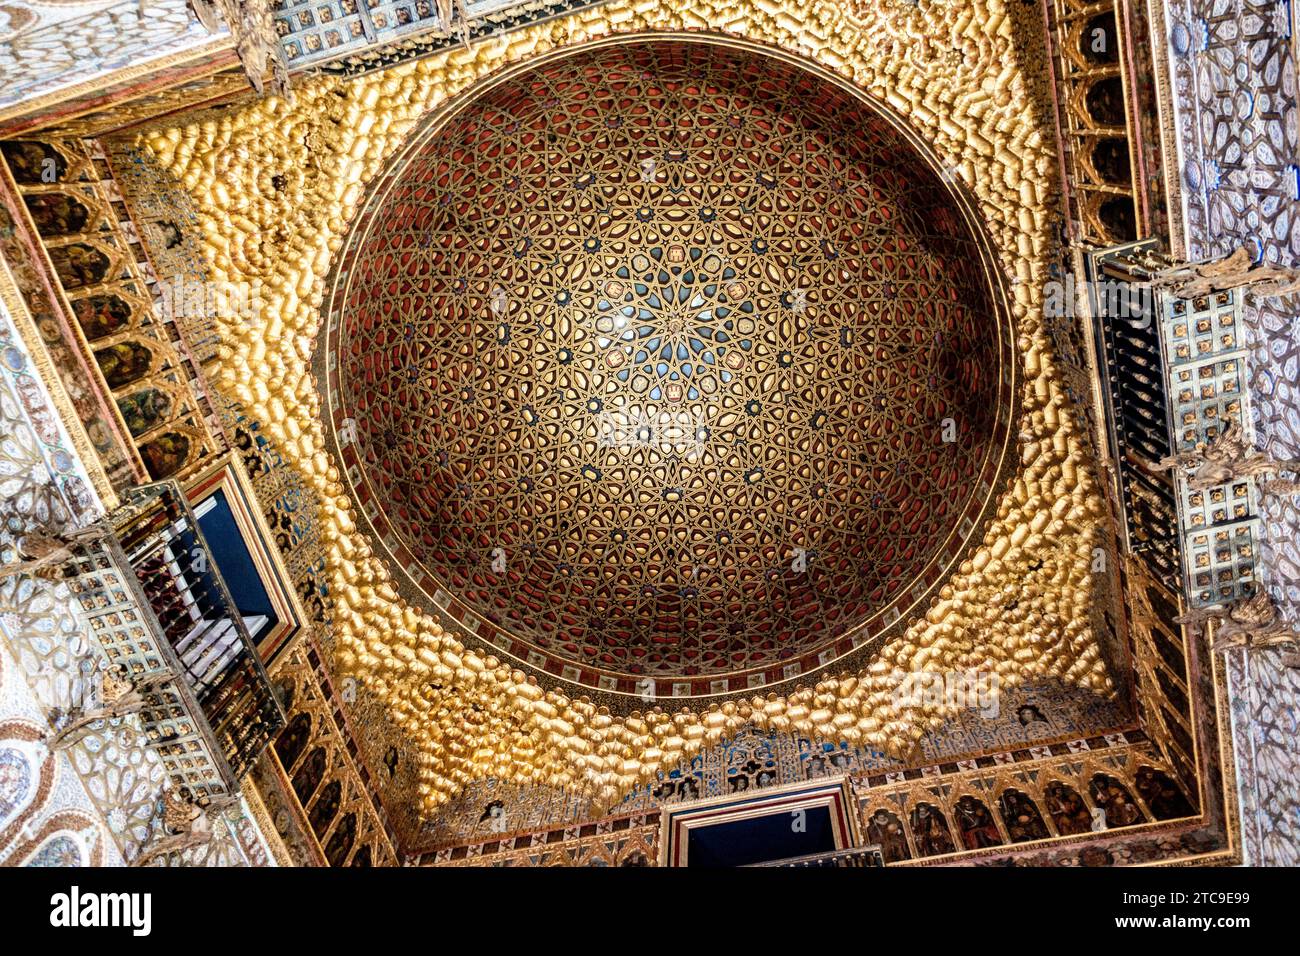 Detaillierte Ansicht eines reich verzierten Kuppelinneren im Alcázar von Sevilla, dem Königlichen Palast von Sevilla, Spanien. Stockfoto